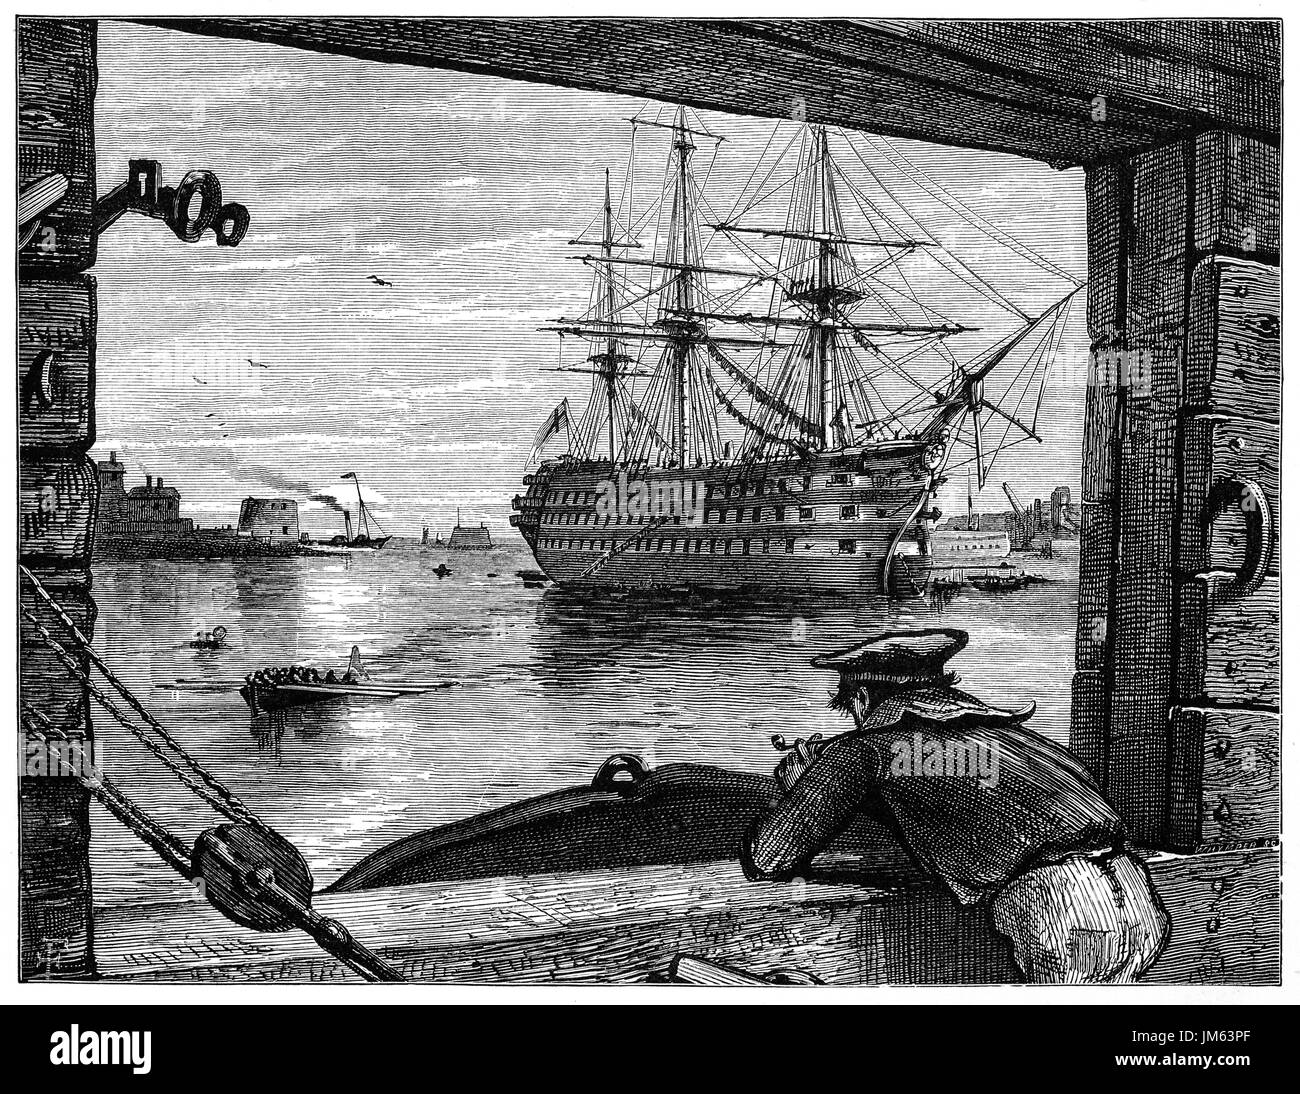 1870: 1870: eine alte Teer (Segler) HMS Victory in Portsmouth Harbour aus Gosport anzeigen. Sie ist ein 104 Kanonen erstklassige Linienschiff der Royal Navy, ordnete im Jahre 1758, 1759 festgelegt und startete im Jahre 1765. Sie ist bekannt für ihre Rolle als Lord Nelsons Flaggschiff in der Schlacht von Trafalgar 1805. Hampshire, England. Stockfoto